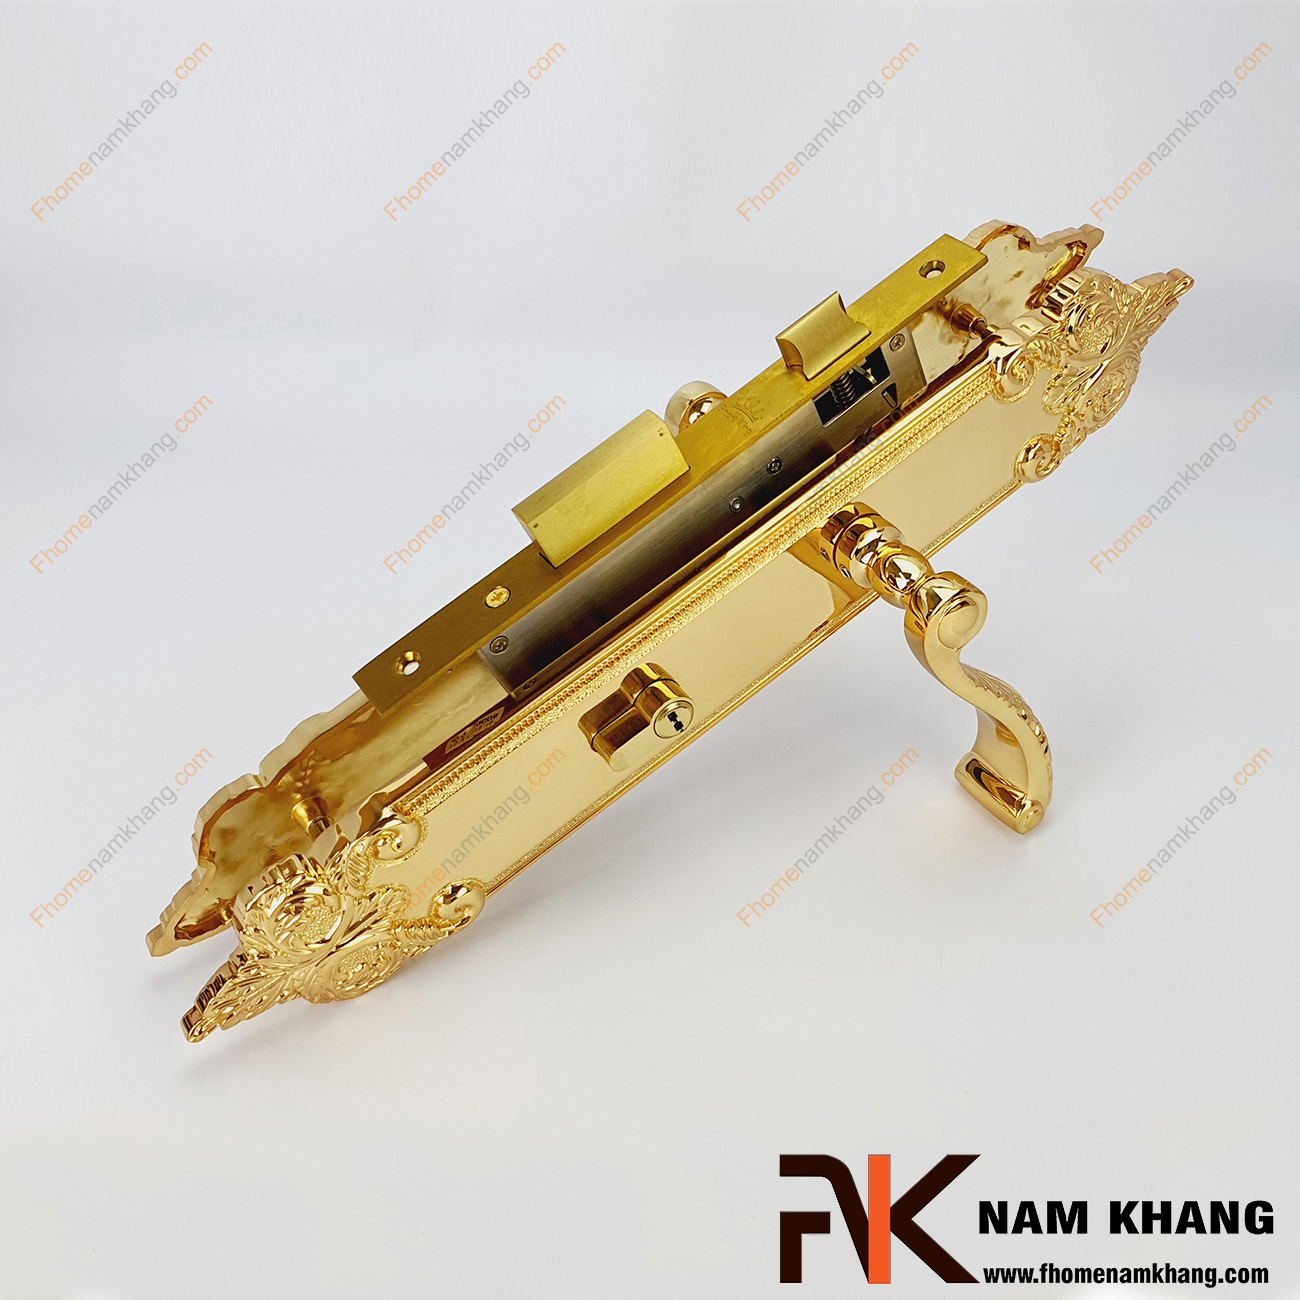 Khóa cửa chính bằng đồng cao cấp mạ vàng NK314L-24K, sản phẩm khóa cửa cao cấp thường sử dụng trên các dạng cửa gỗ và nhiều dạng cửa với các chất liệu khác.